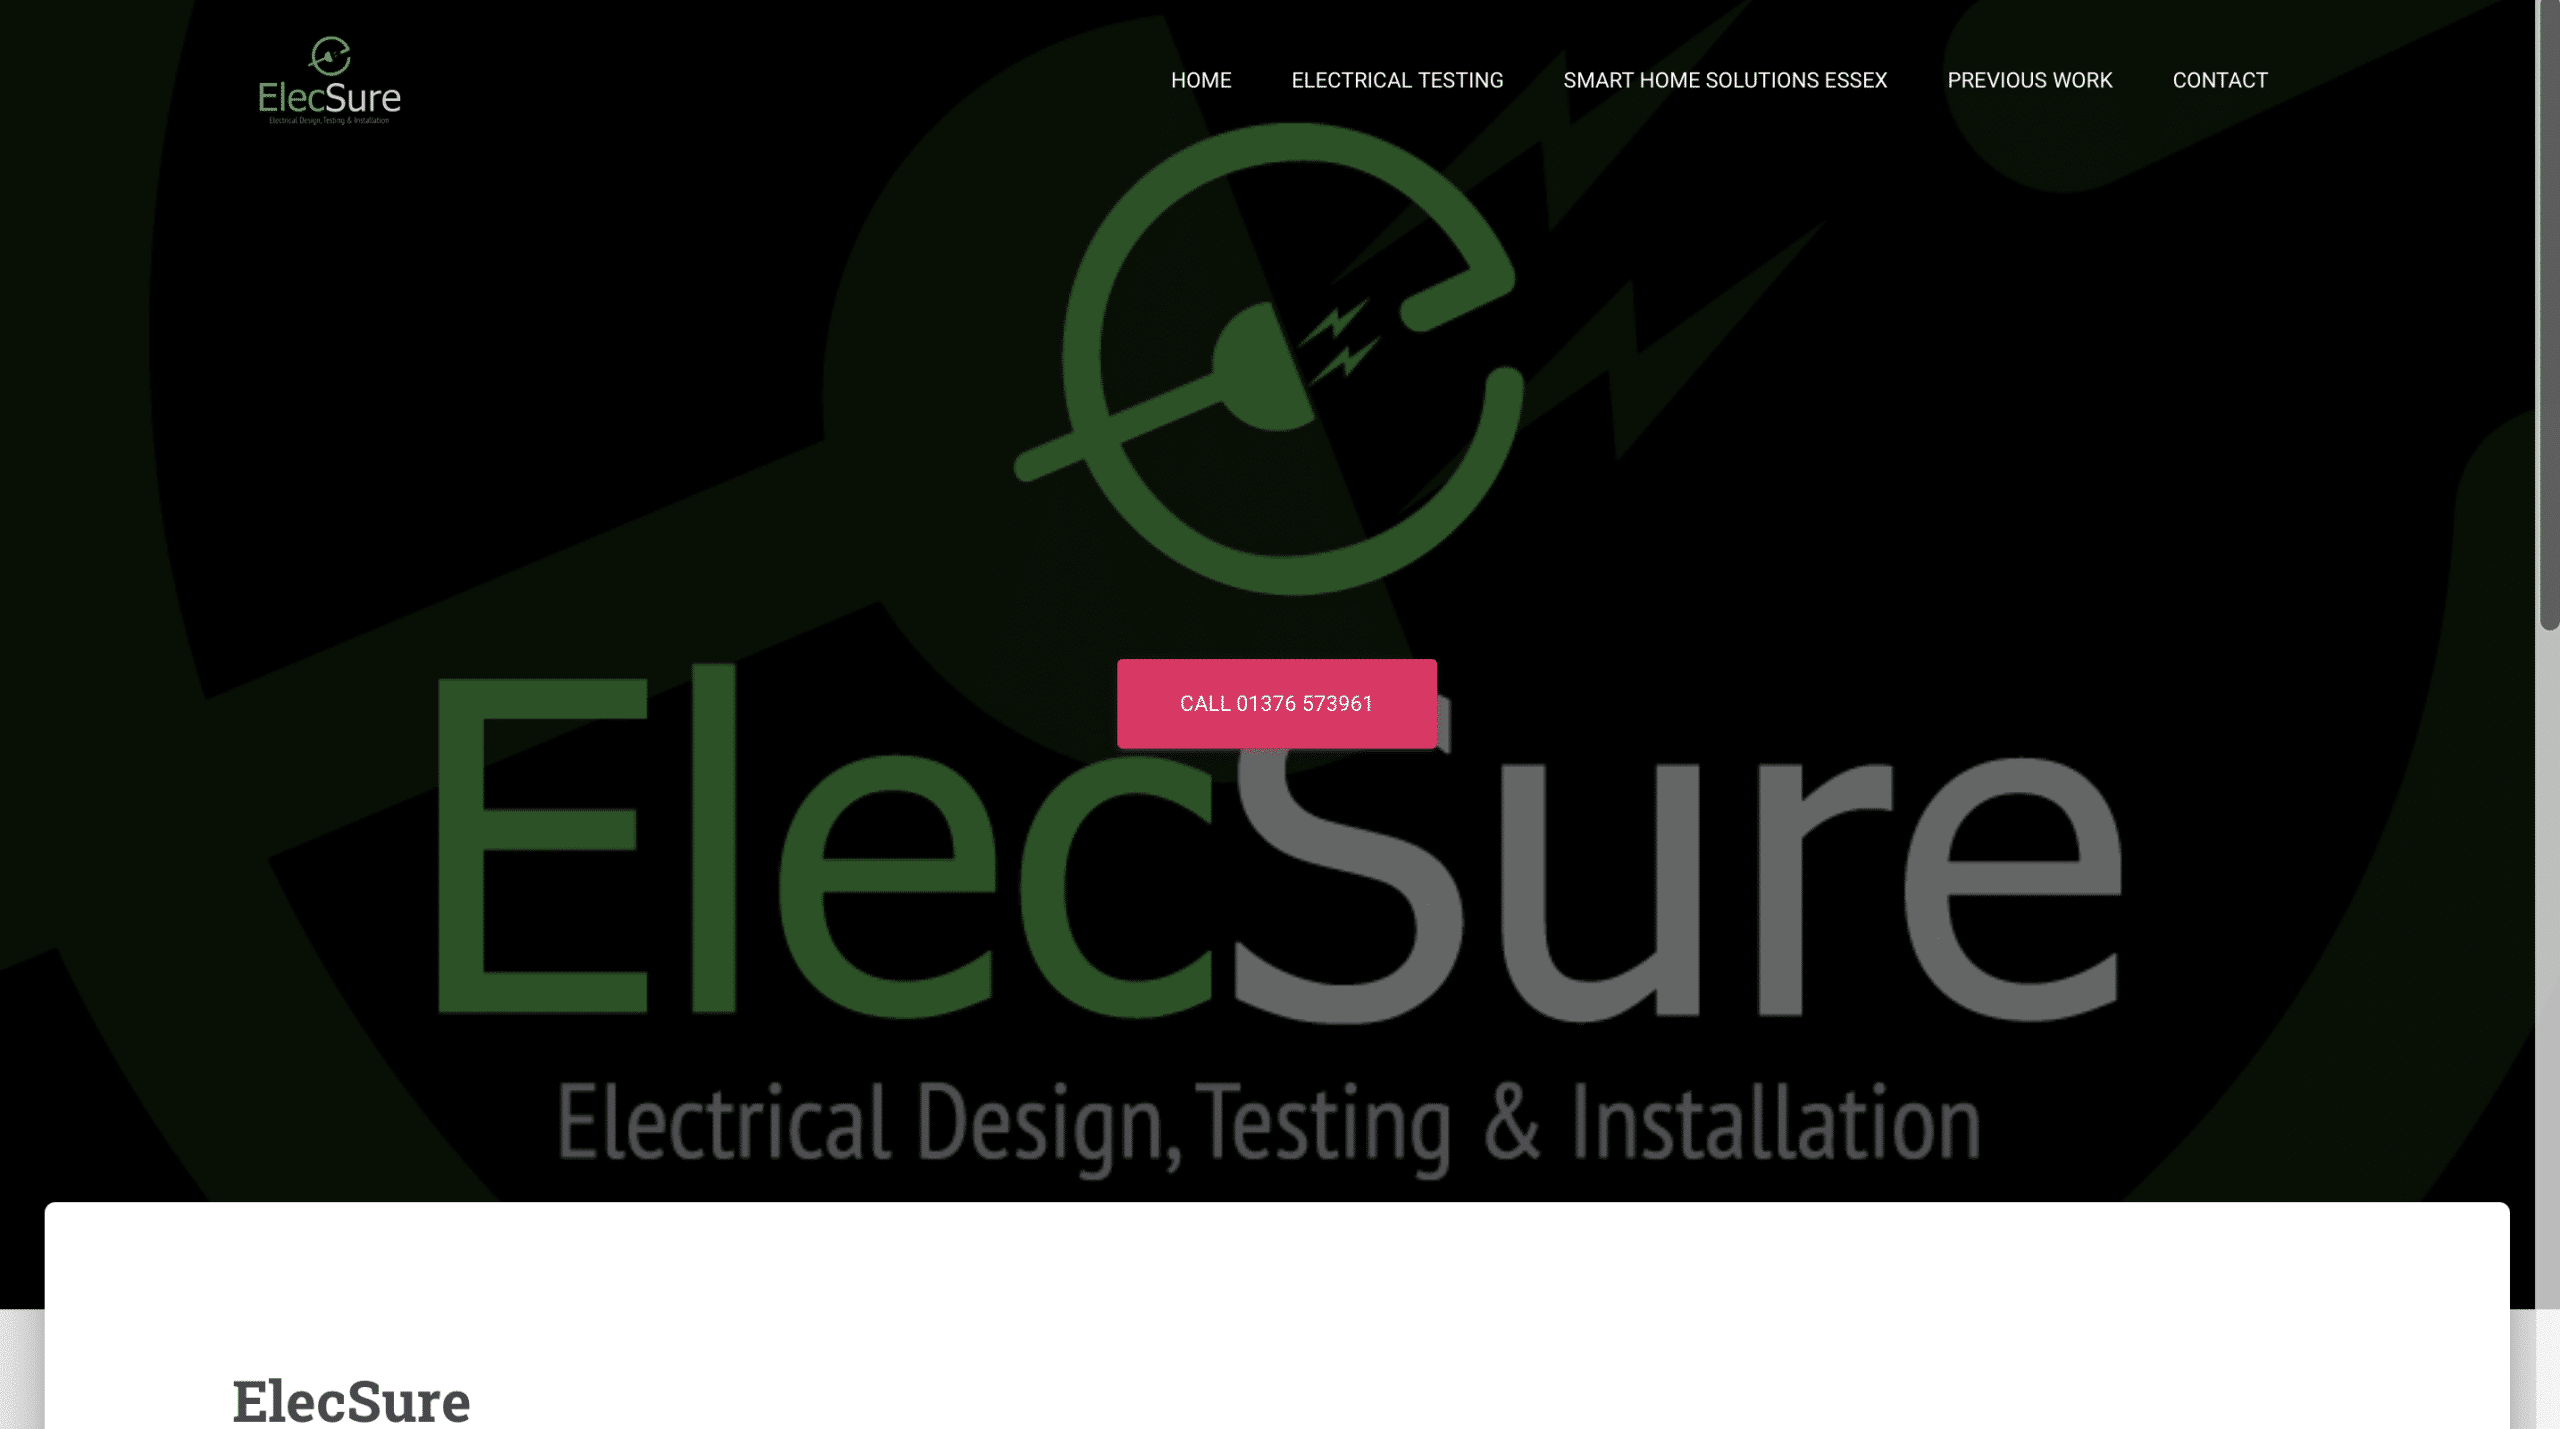 ElecSure